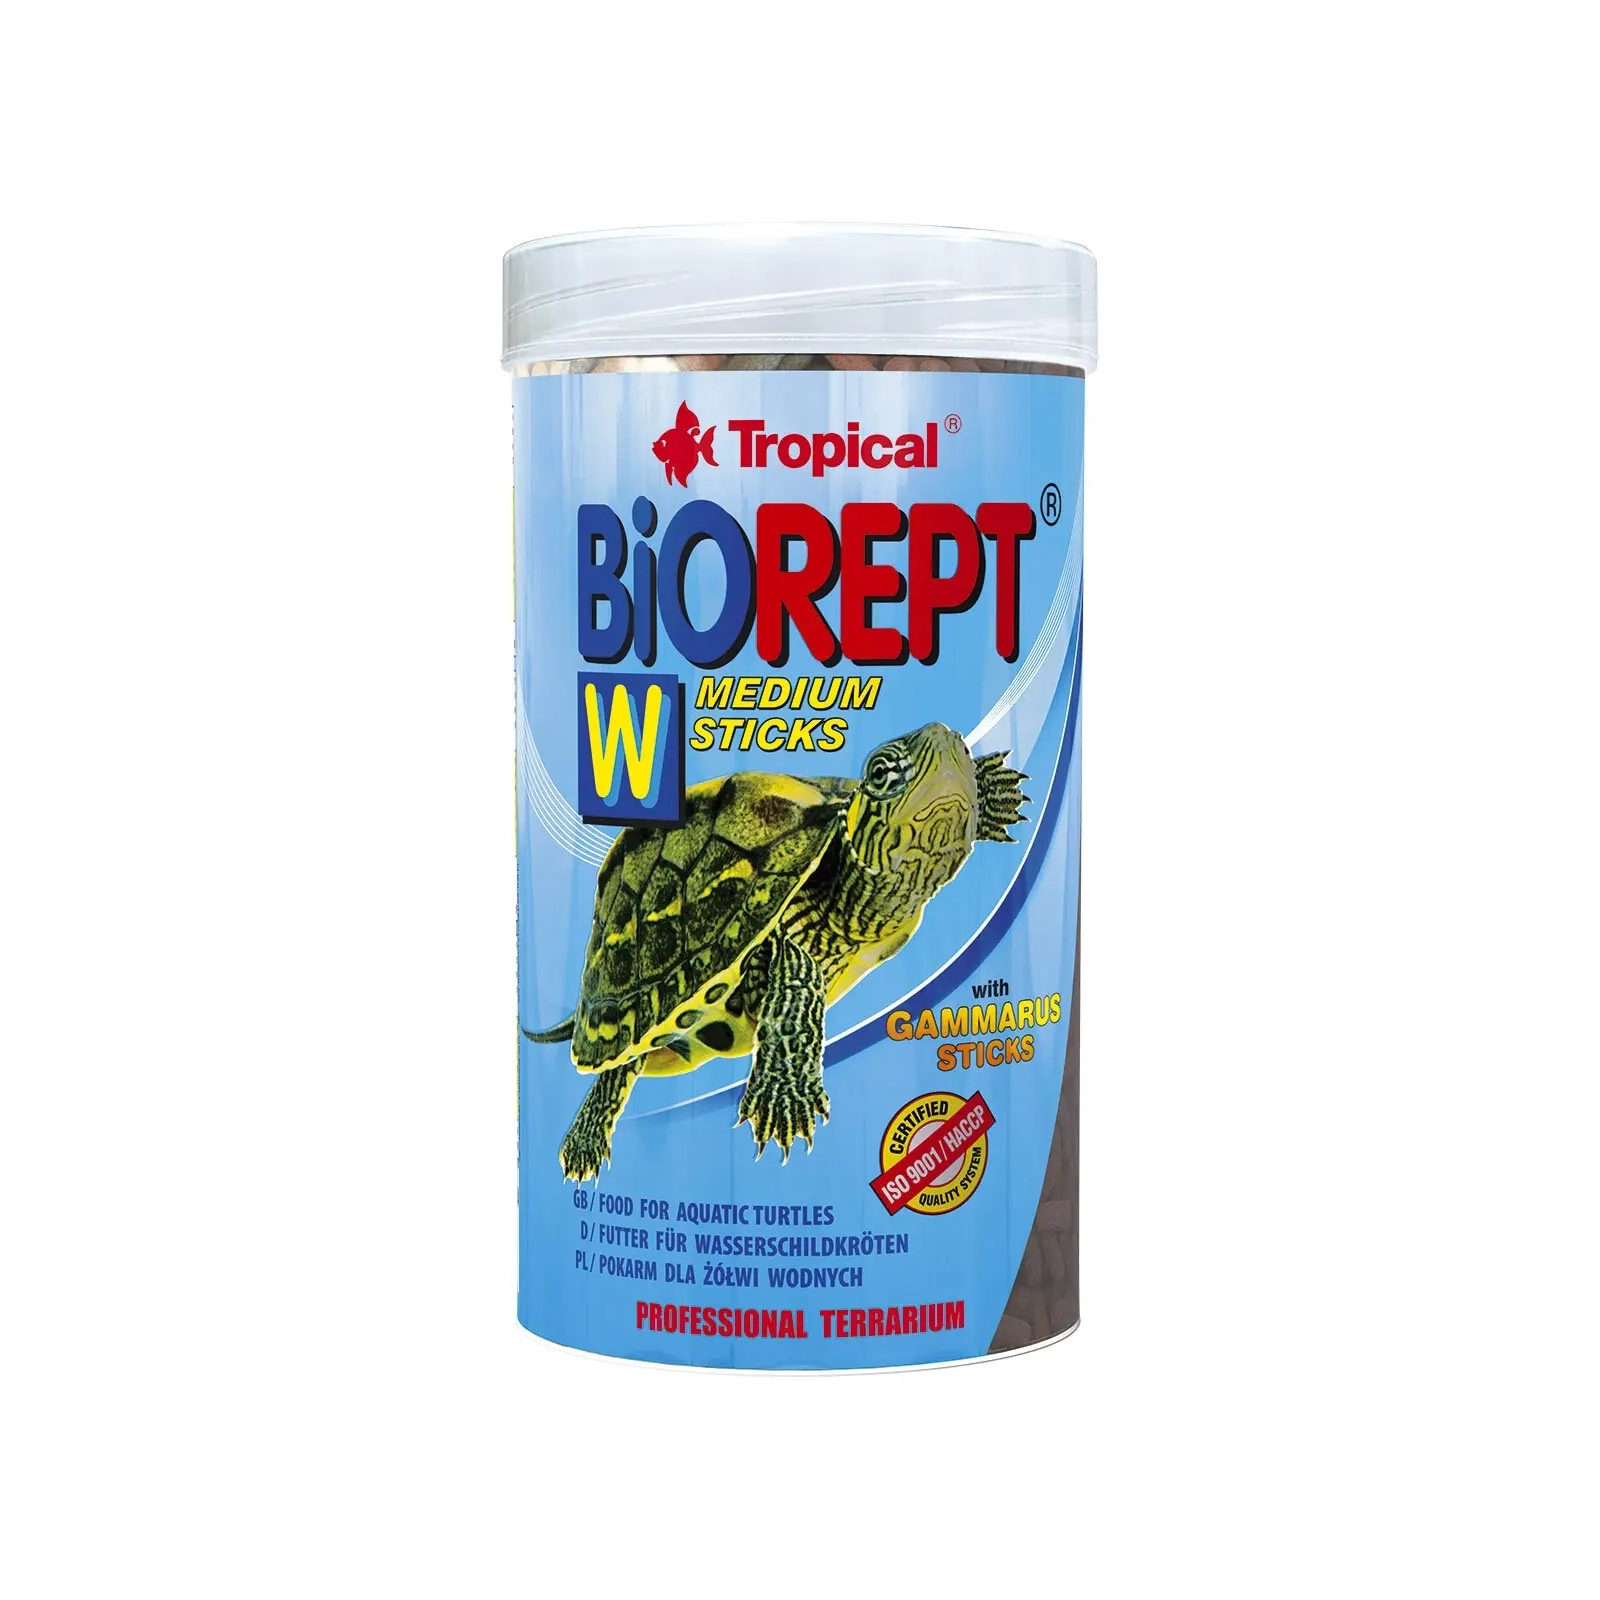 Корм для черепах Tropical Biorept W для земноводных и водных черепах 67 мл/20 г (5900469113417)